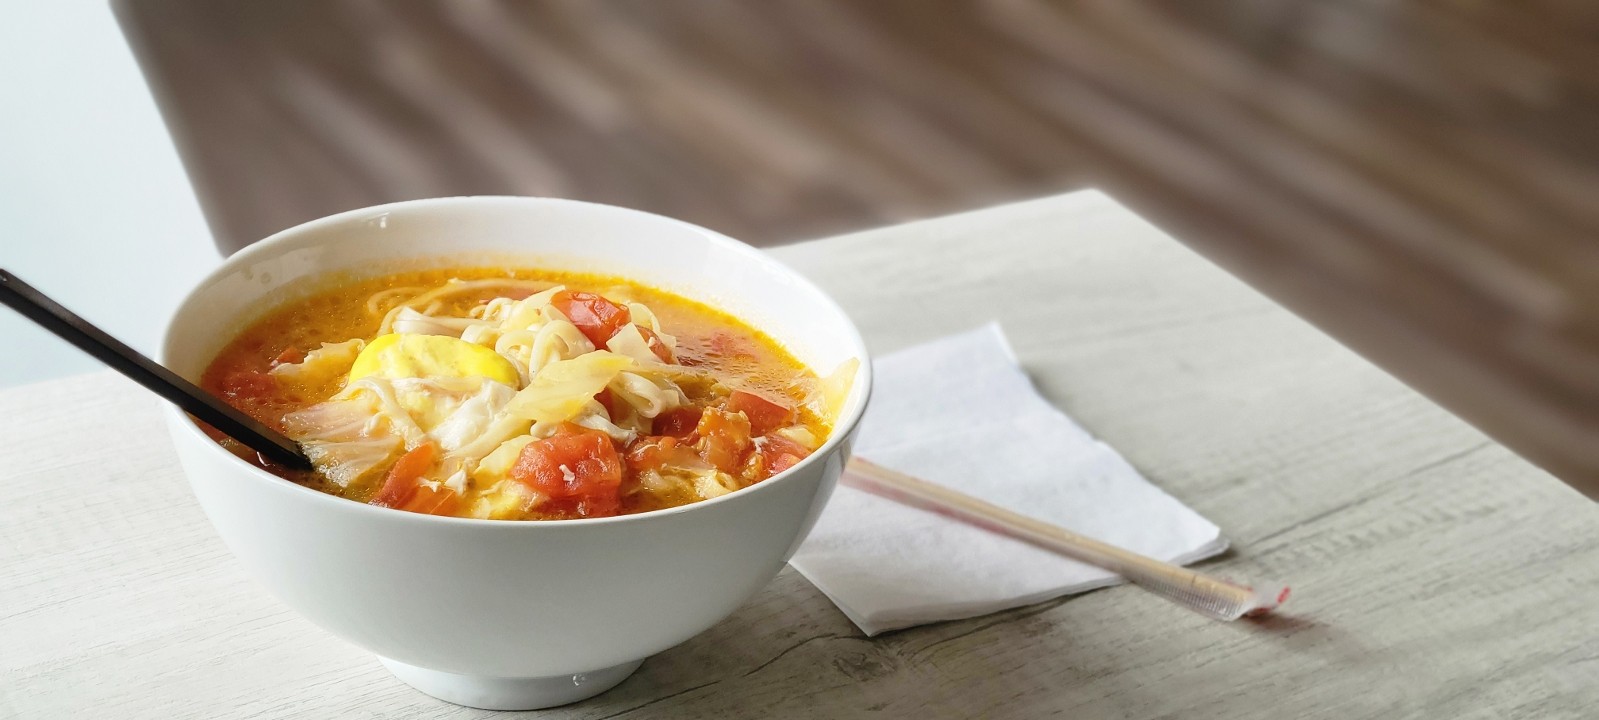 Tomato Noodle Soup 番茄汤面